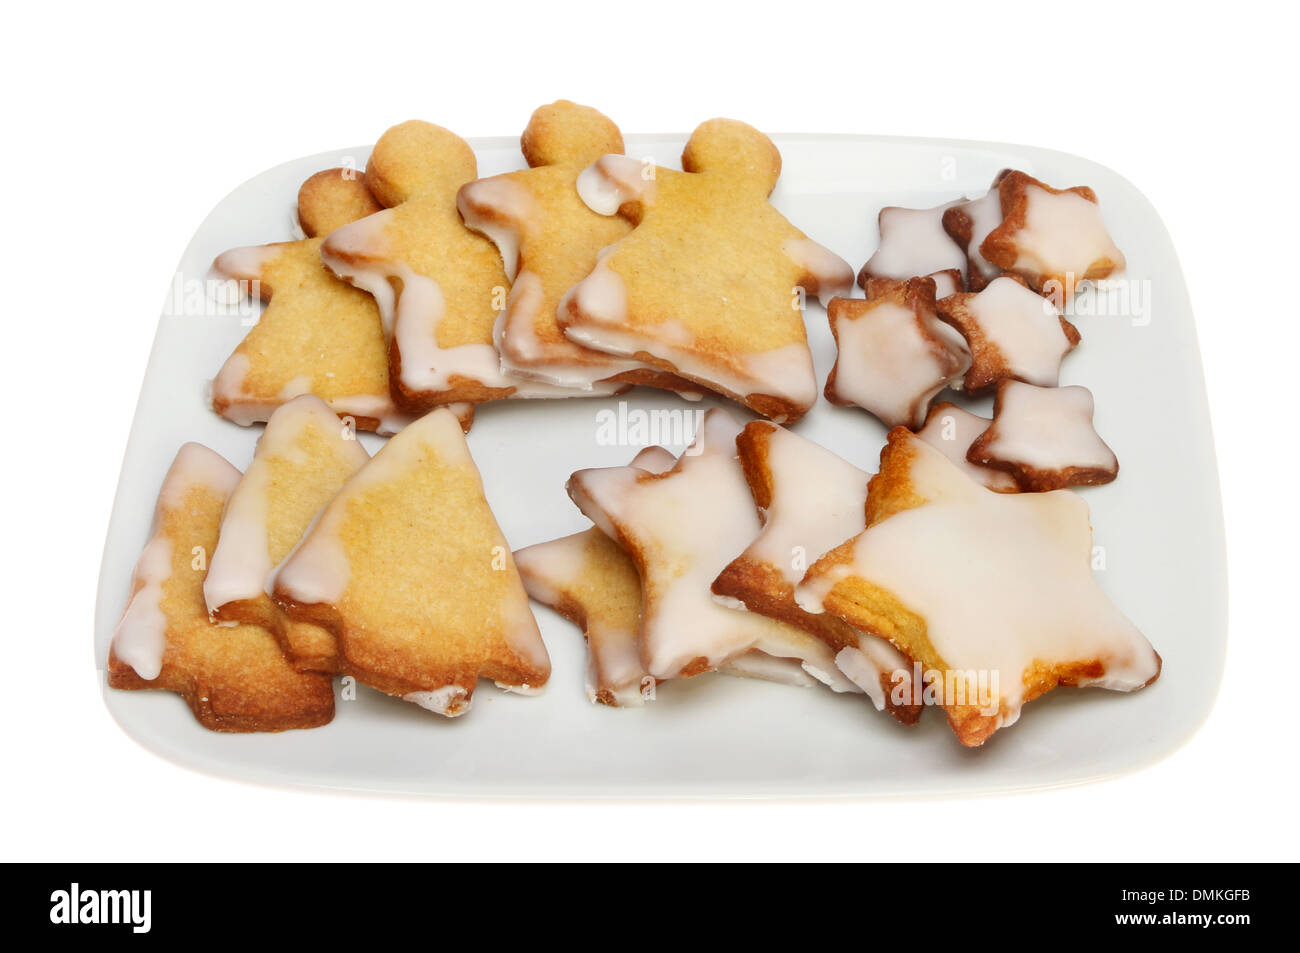 Sur le thème de Noël biscuits sablés sur une plaque isolés contre white Banque D'Images